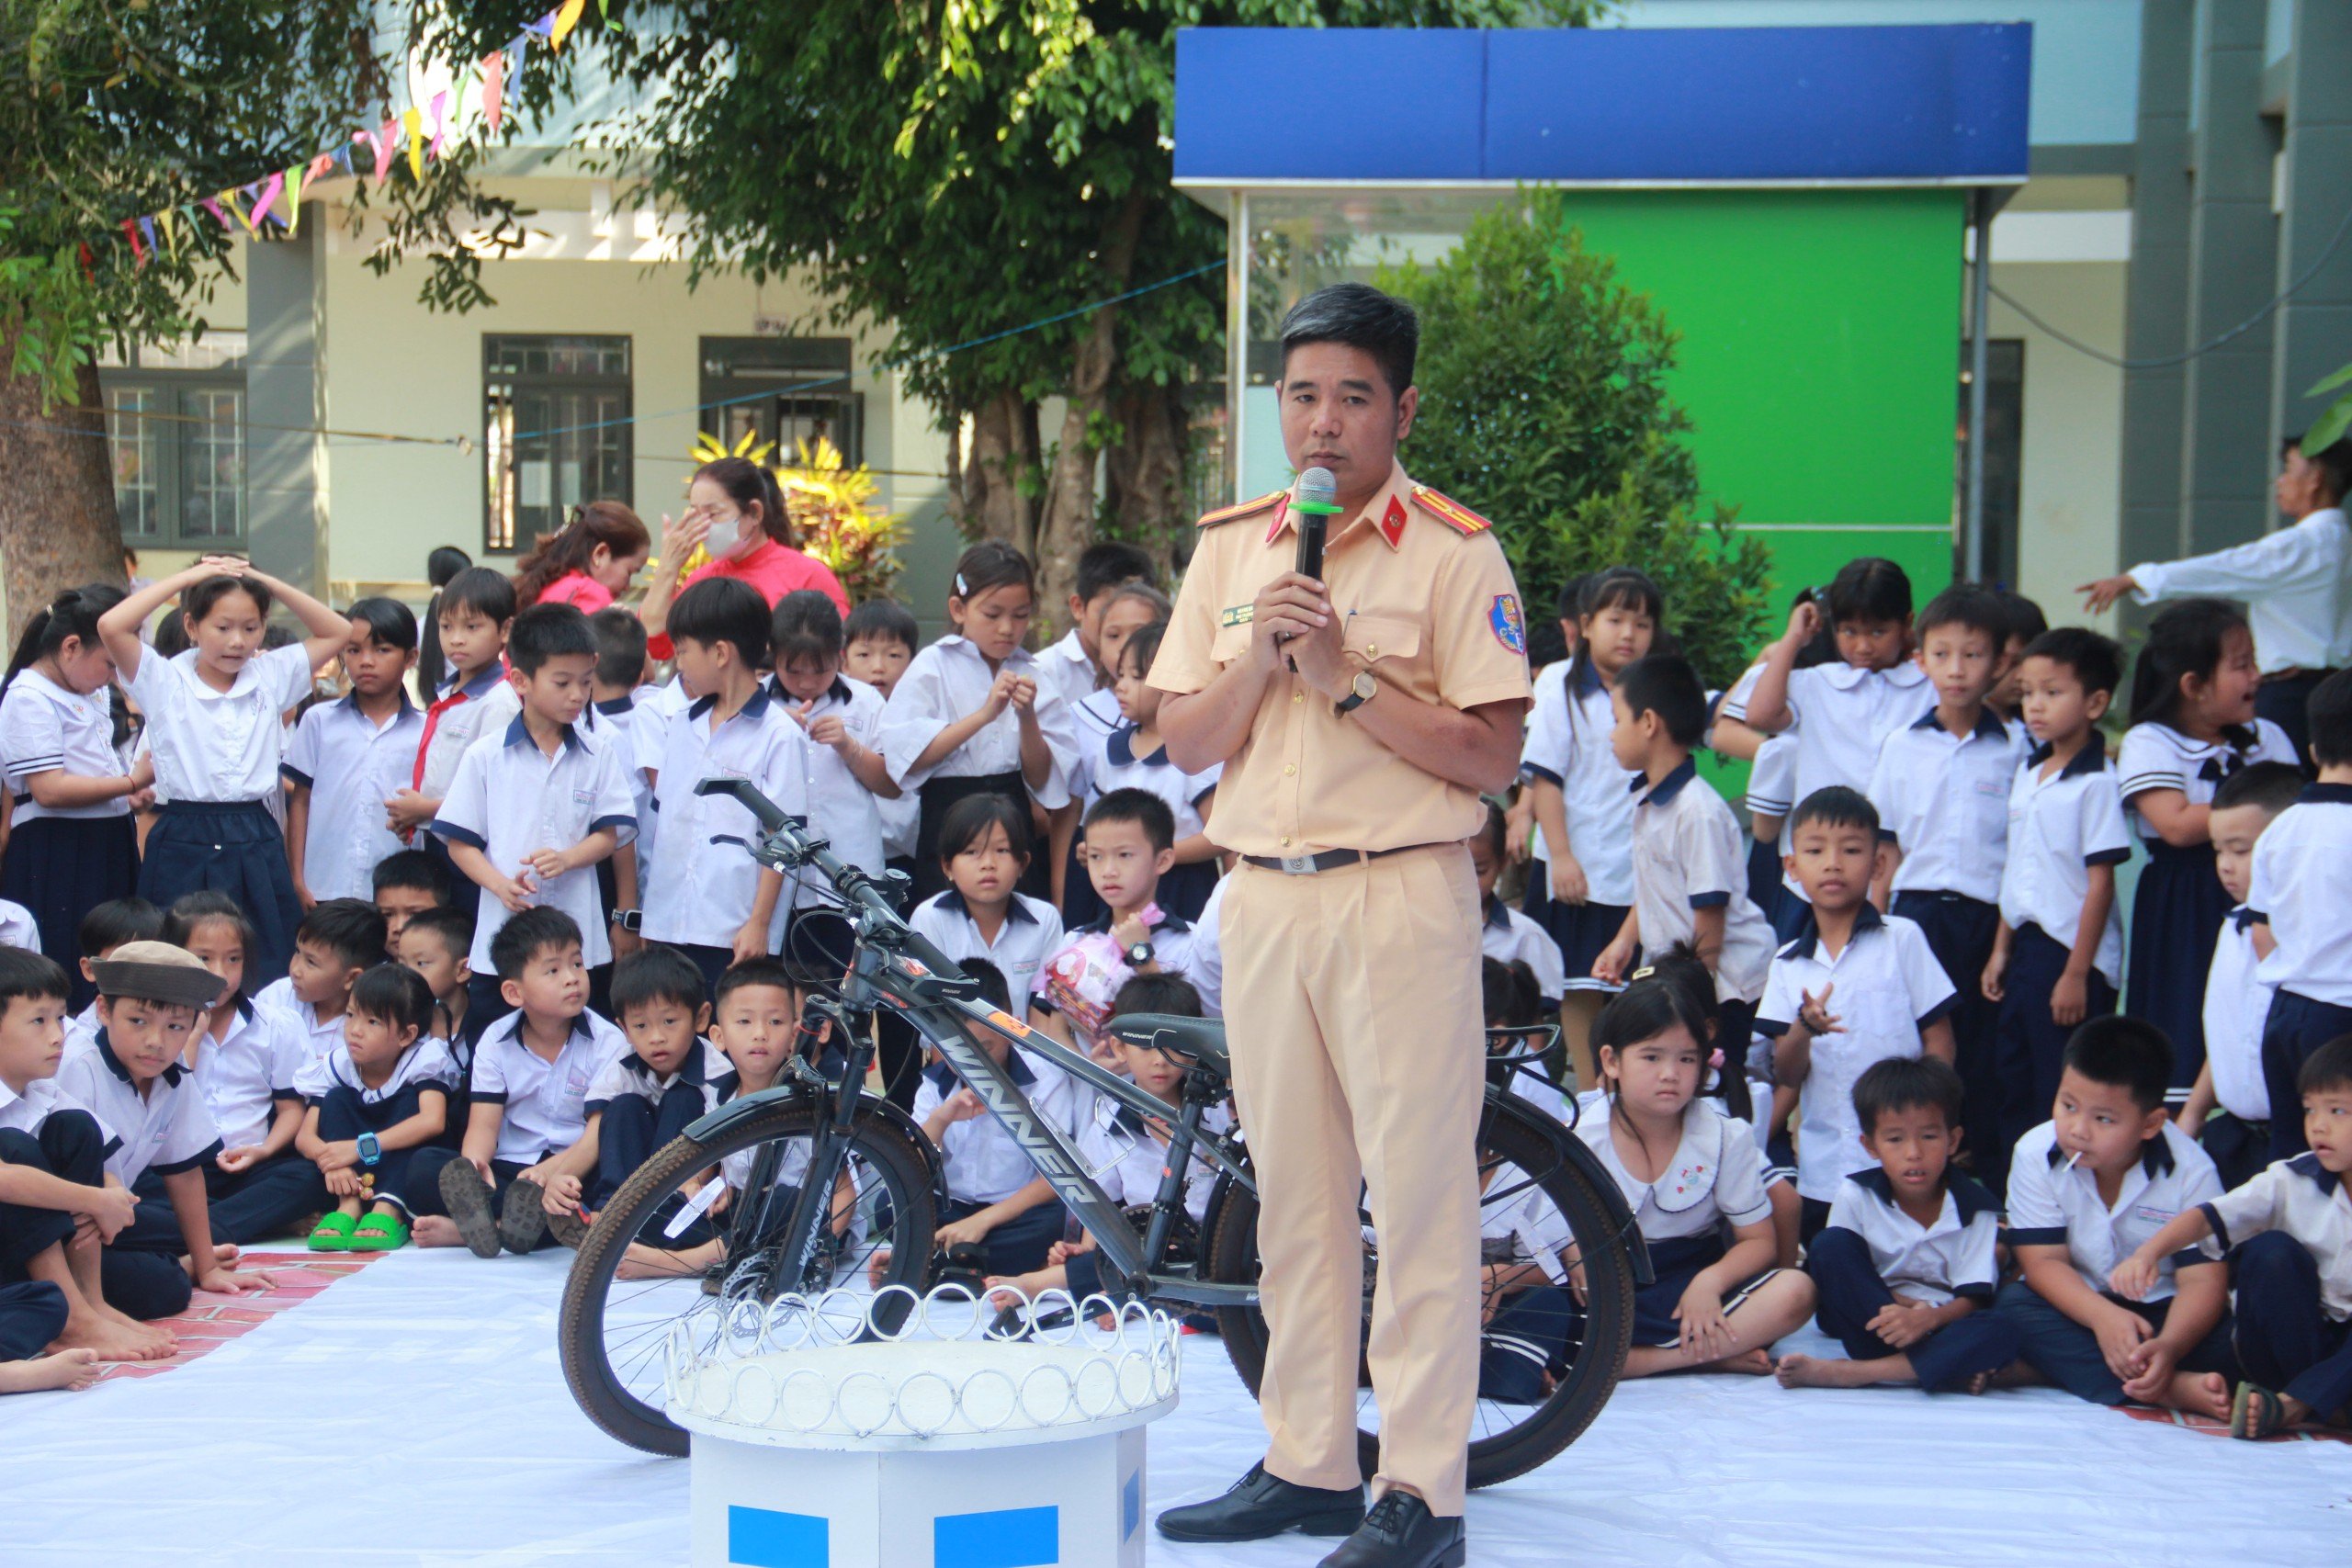 Thiếu tá Hoàng Bá Tuấn, Phó Phòng Cảnh sát giao thông, Công an tỉnh tuyên truyền kiến thức Luật Giao thông đến với các em HS